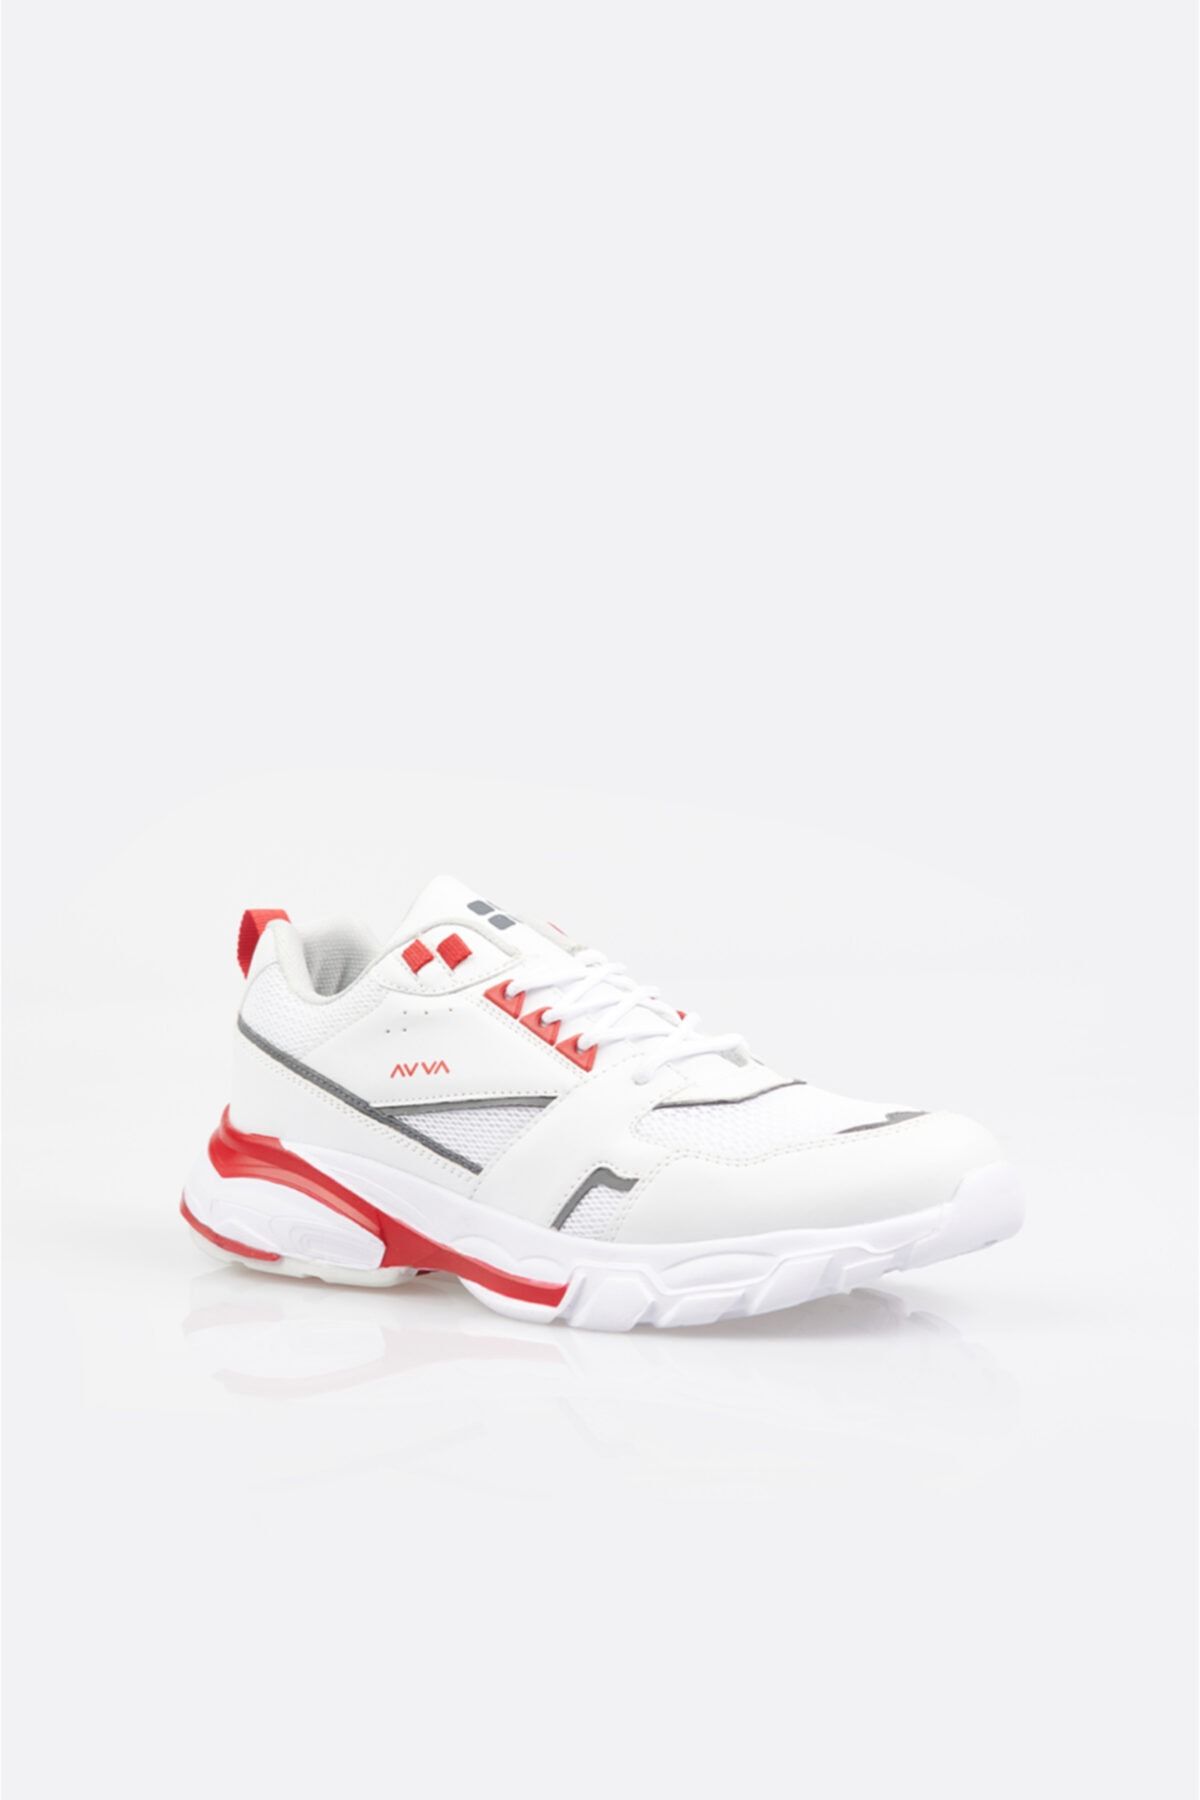 Avva Erkek Beyaz Garnili Spor Ayakkabı A11y8012